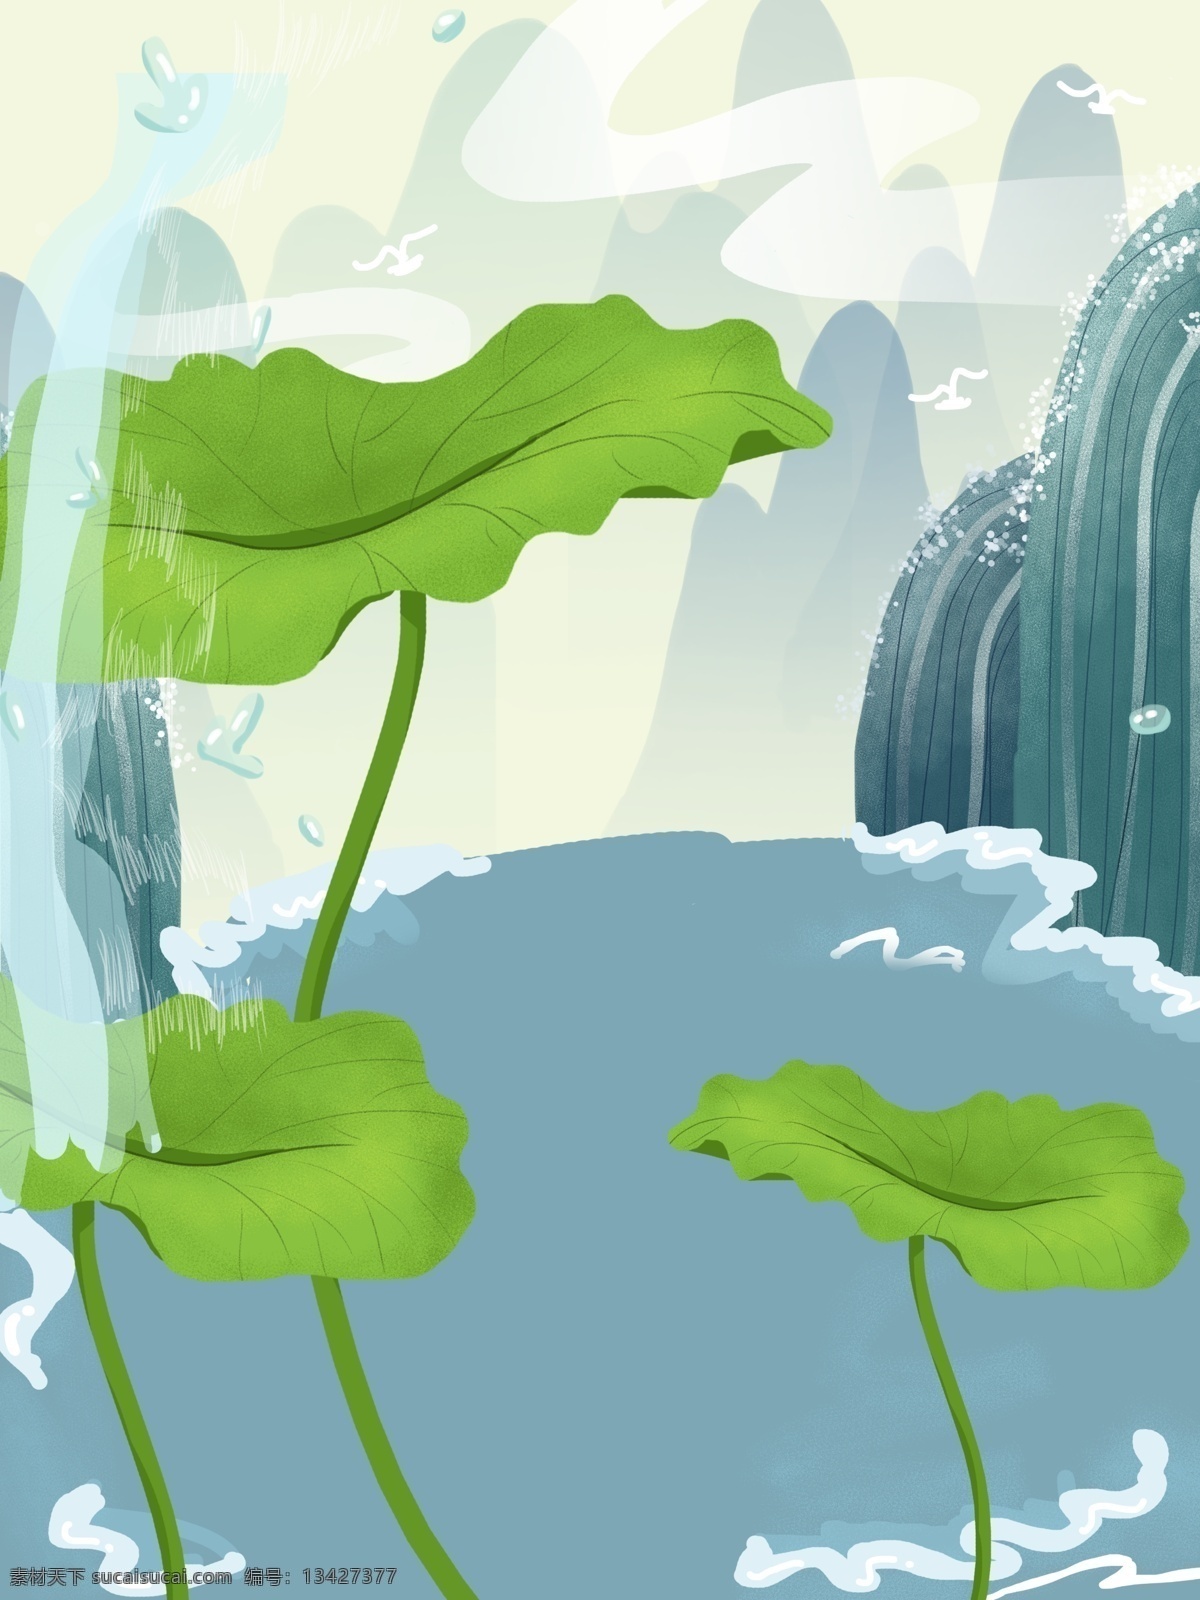 手绘 河边 植物 风景 插画 背景 插画背景 植物背景 荷叶 瀑布背景 通用背景 手绘背景 卡通背景